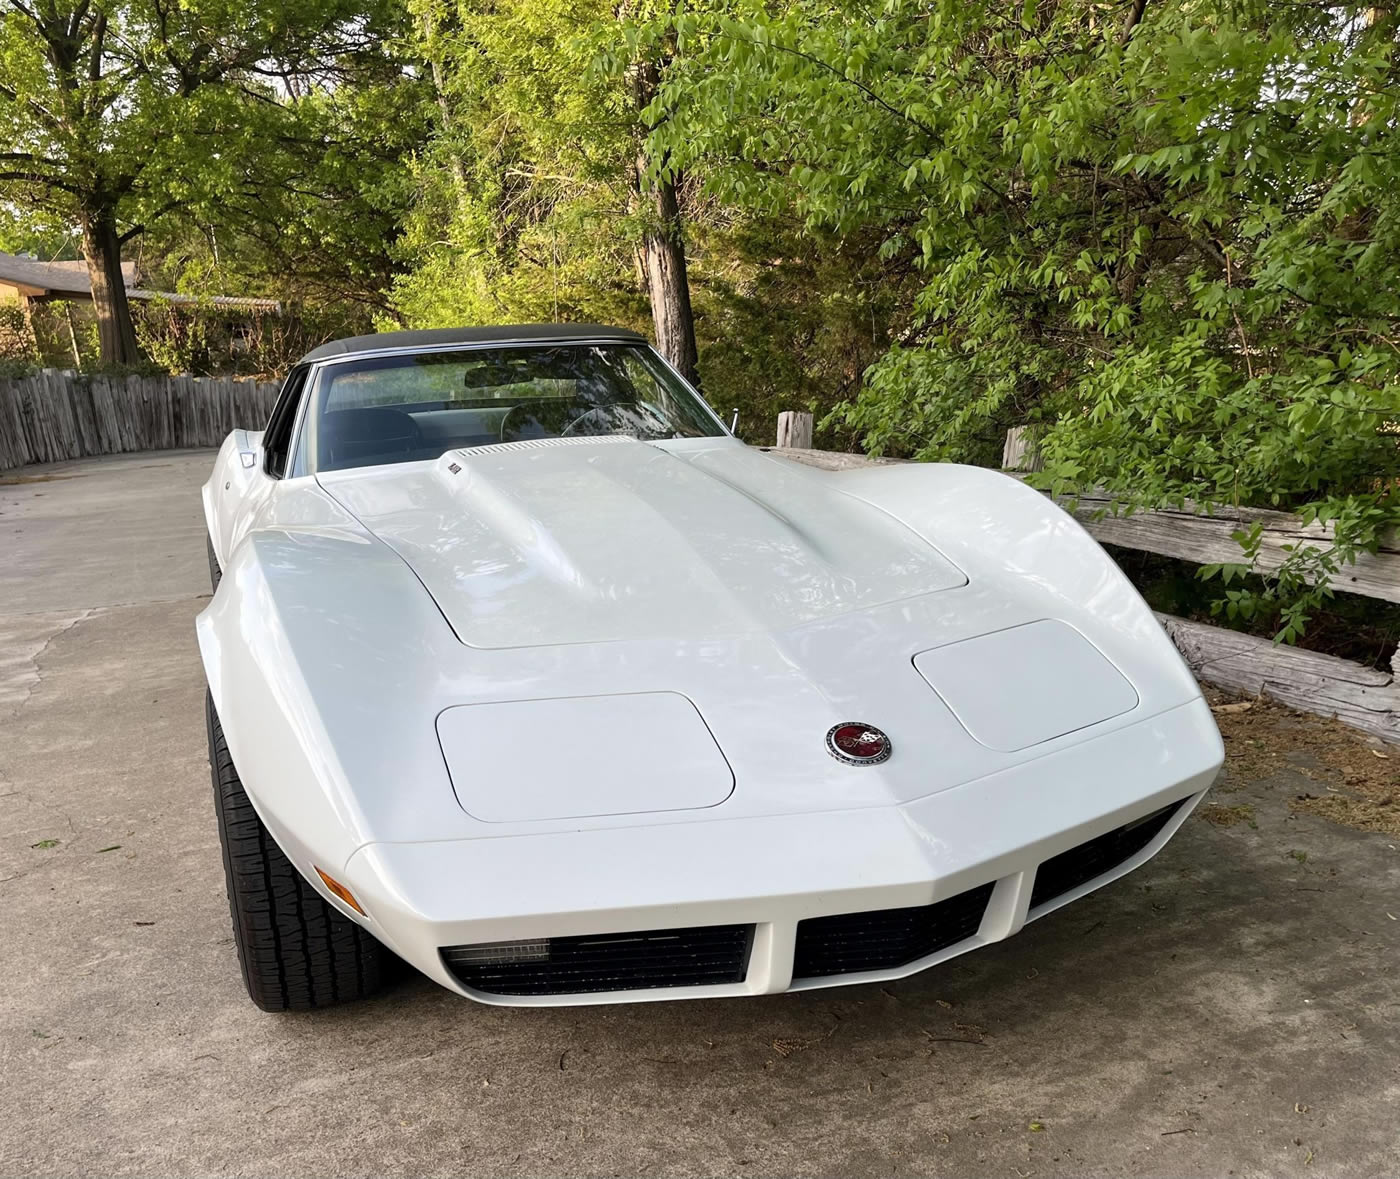 1973 Corvette Convertible L-82 in Classic White